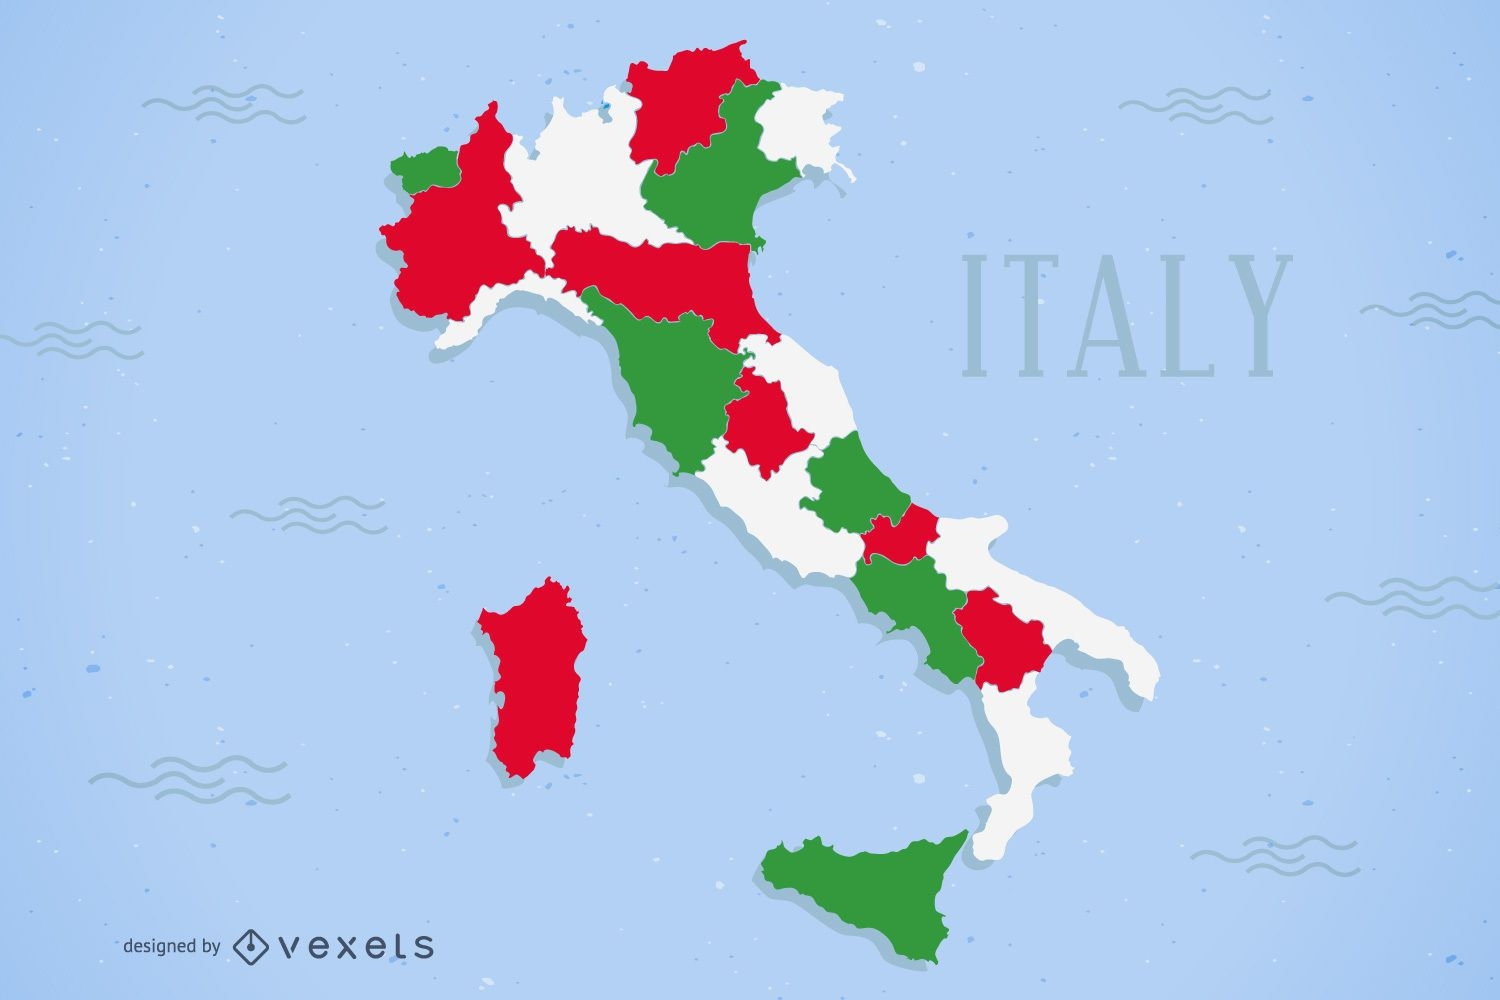 Dise?o de mapa de Italia a color